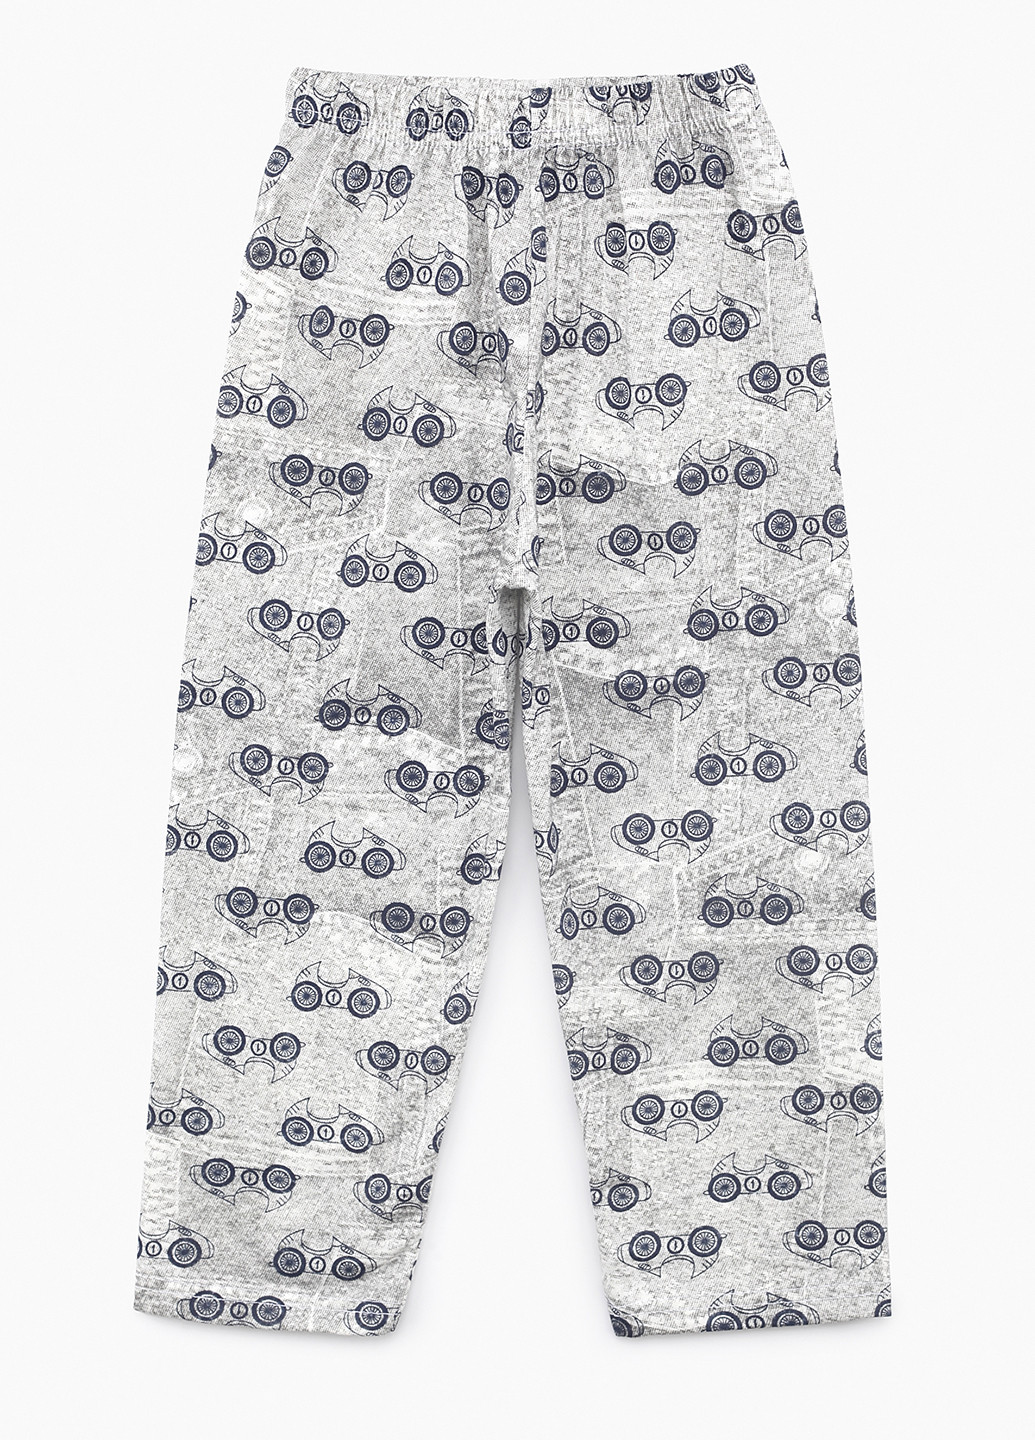 Комбинированная всесезон пижама (лонгслив, брюки) лонгслив + брюки Dalmina